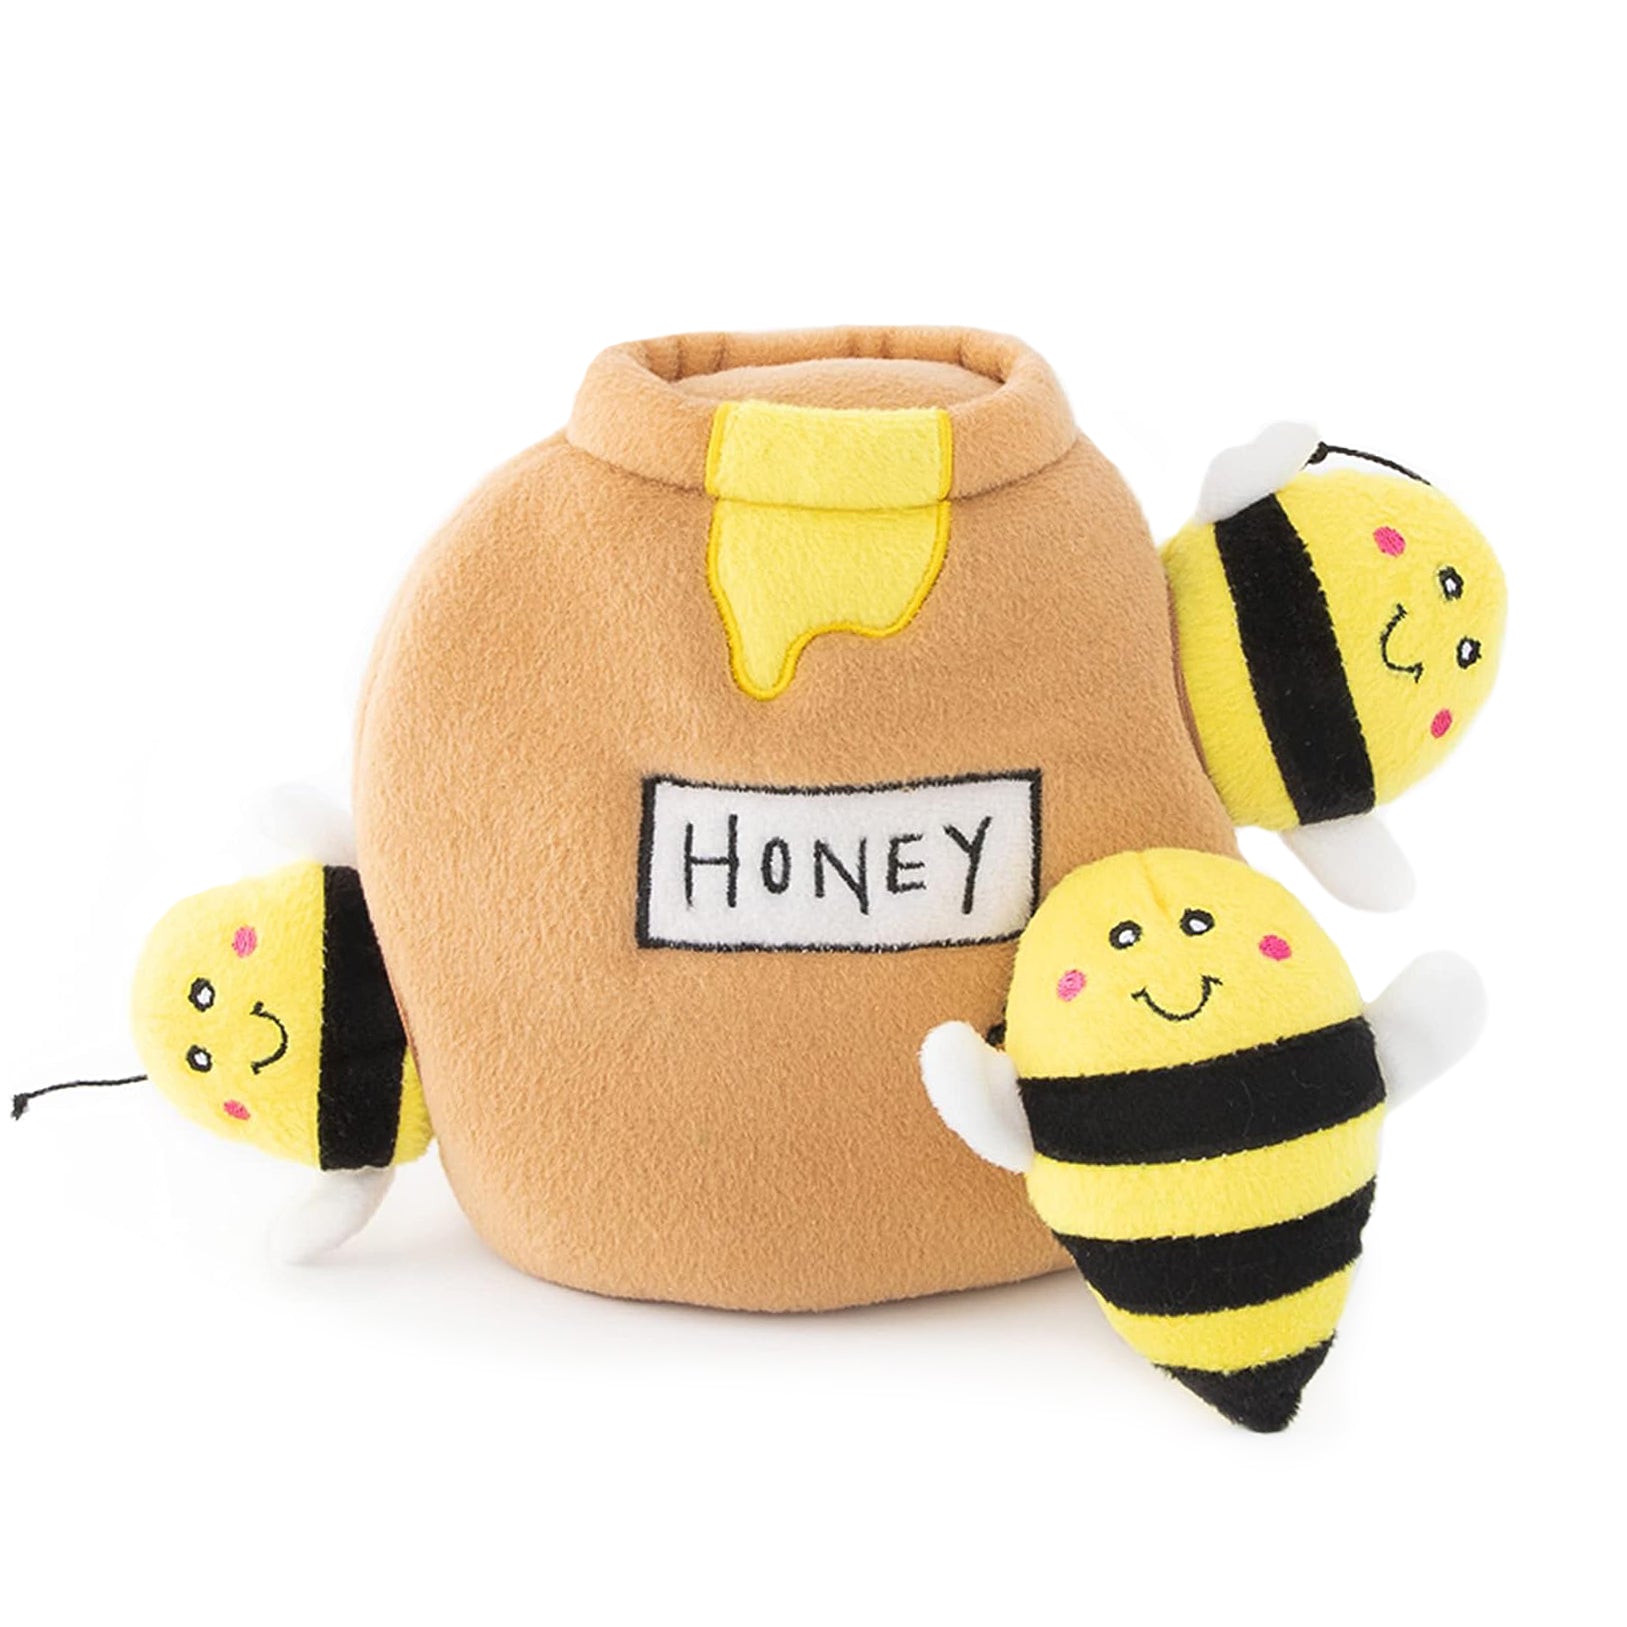 Honey Pot Dog Toy